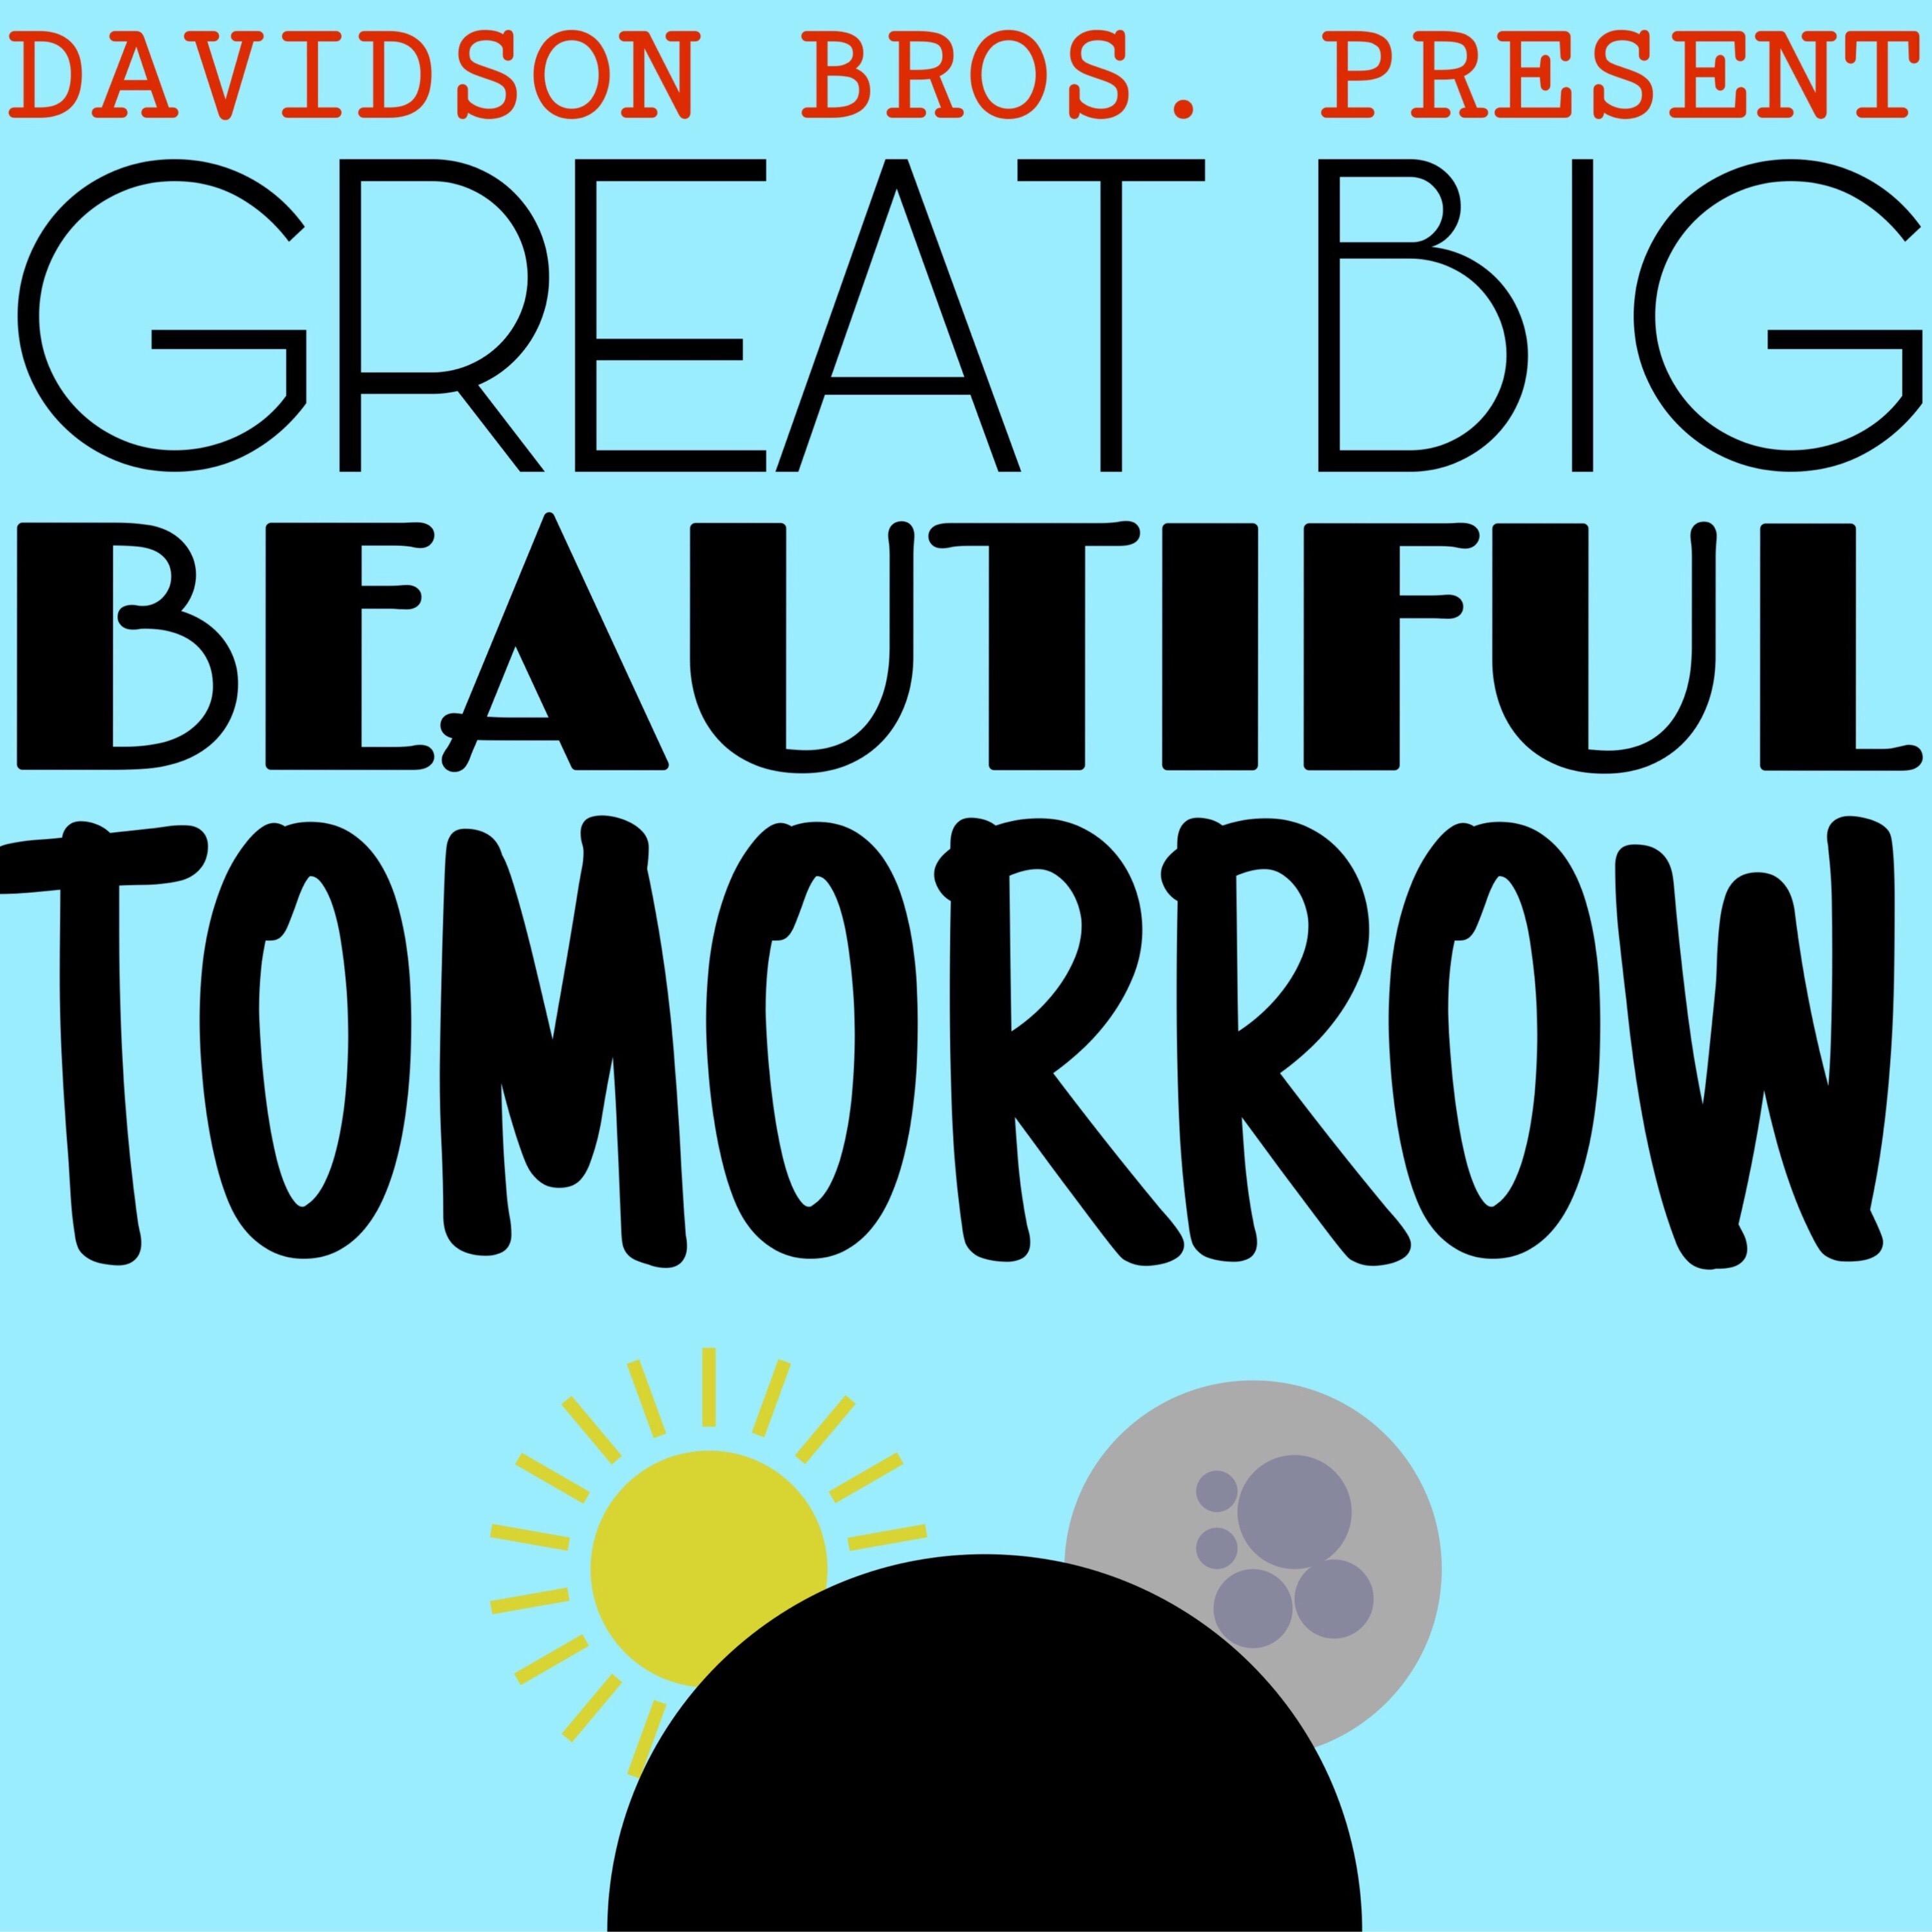 Great Big Beautiful Tomorrow